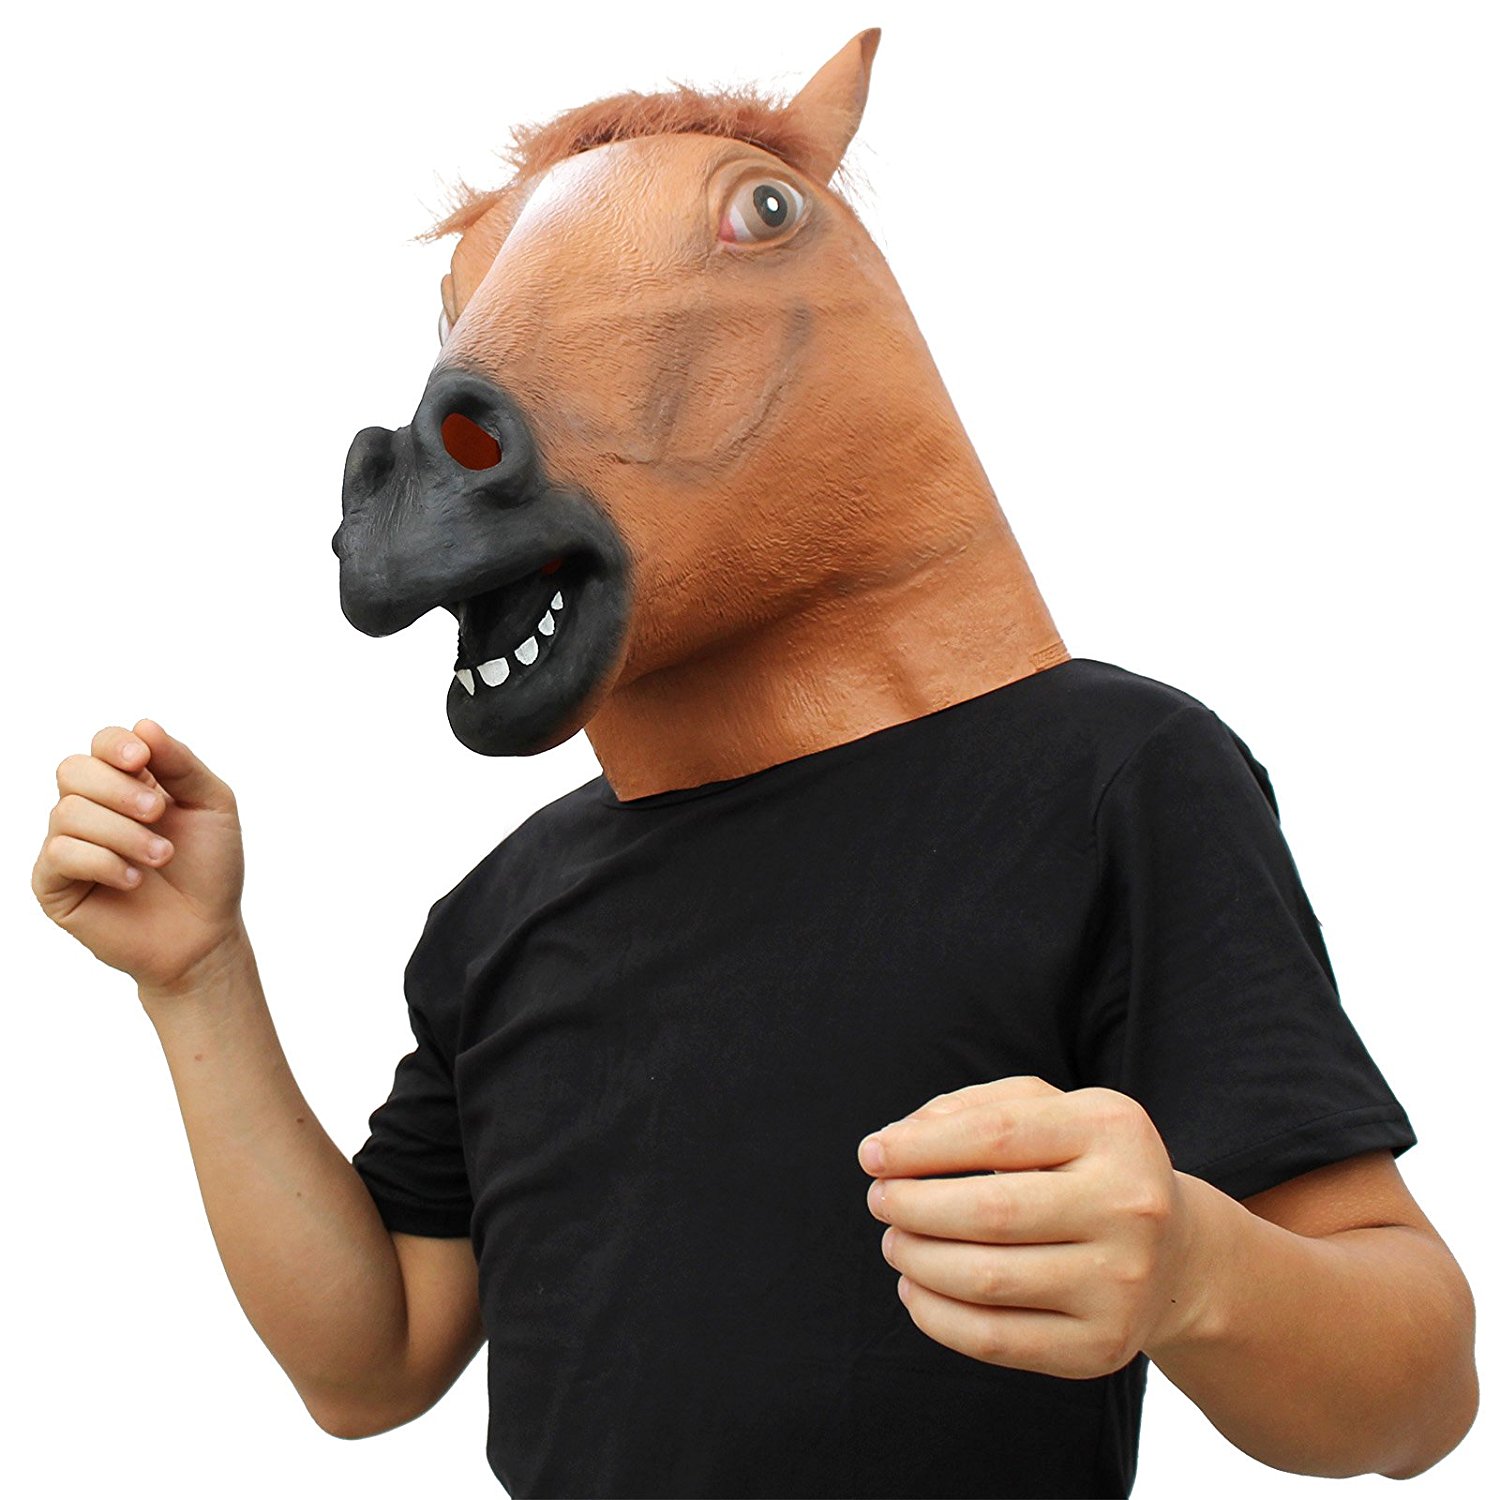 коњска глава како маска